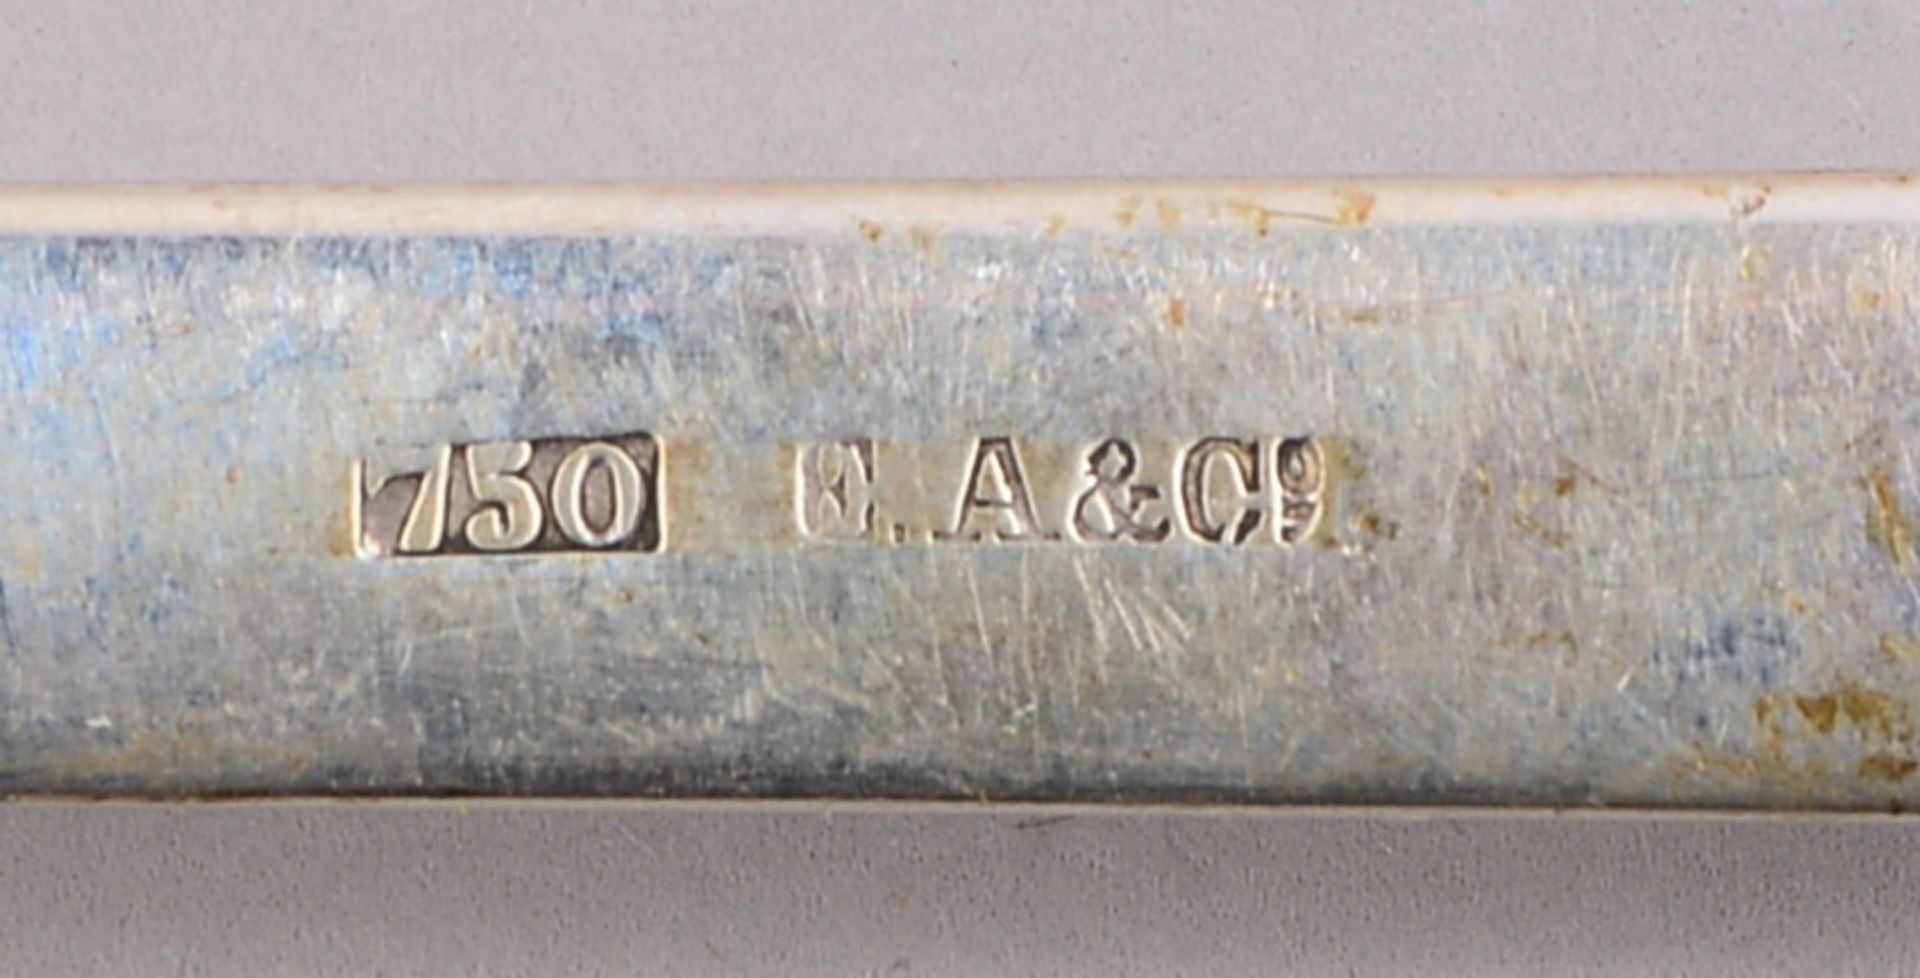 Silberteile, versch. Silbergehalte (Tablett, Kelle, Eierbecher, u.a.); Gew. zus. 508 g - Image 2 of 2